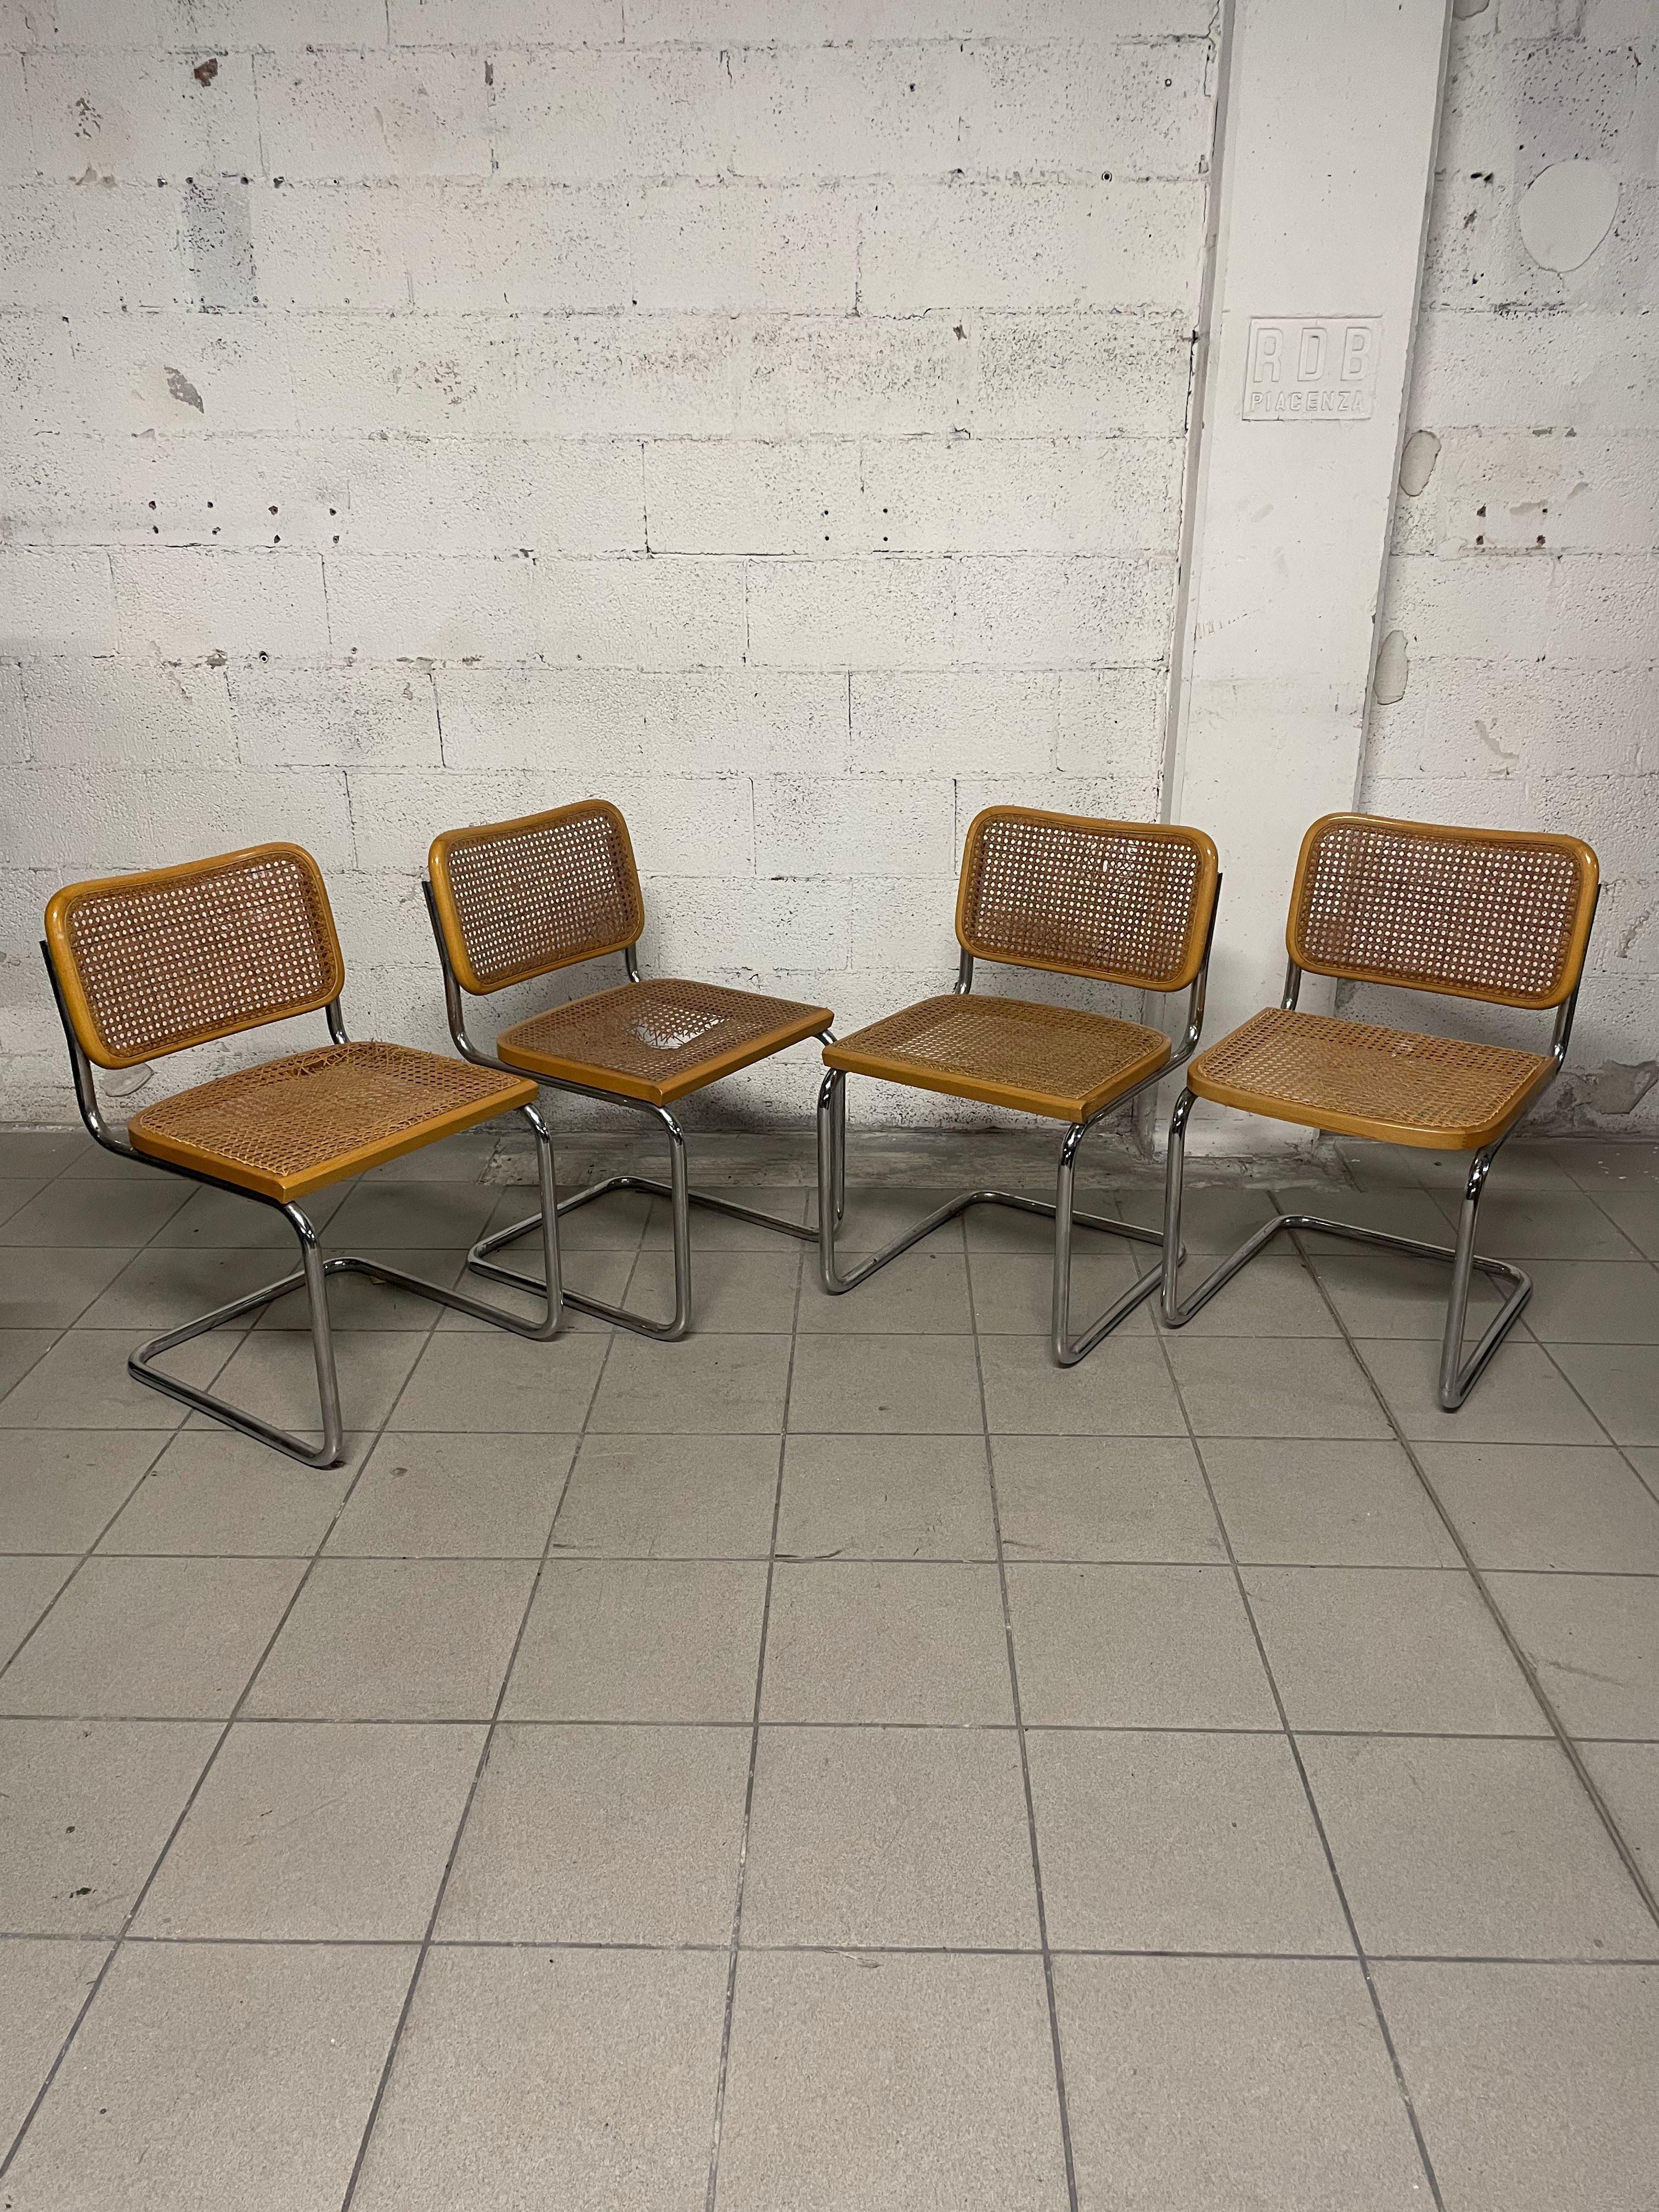 Set di 4 sedie Cesca B32 progettate da Marcel Breuer nel 1928 e qui riprodotte negli anni '70 da Gavina.
Struttura in tubolare d'acciaio cromato nella configurazione a 